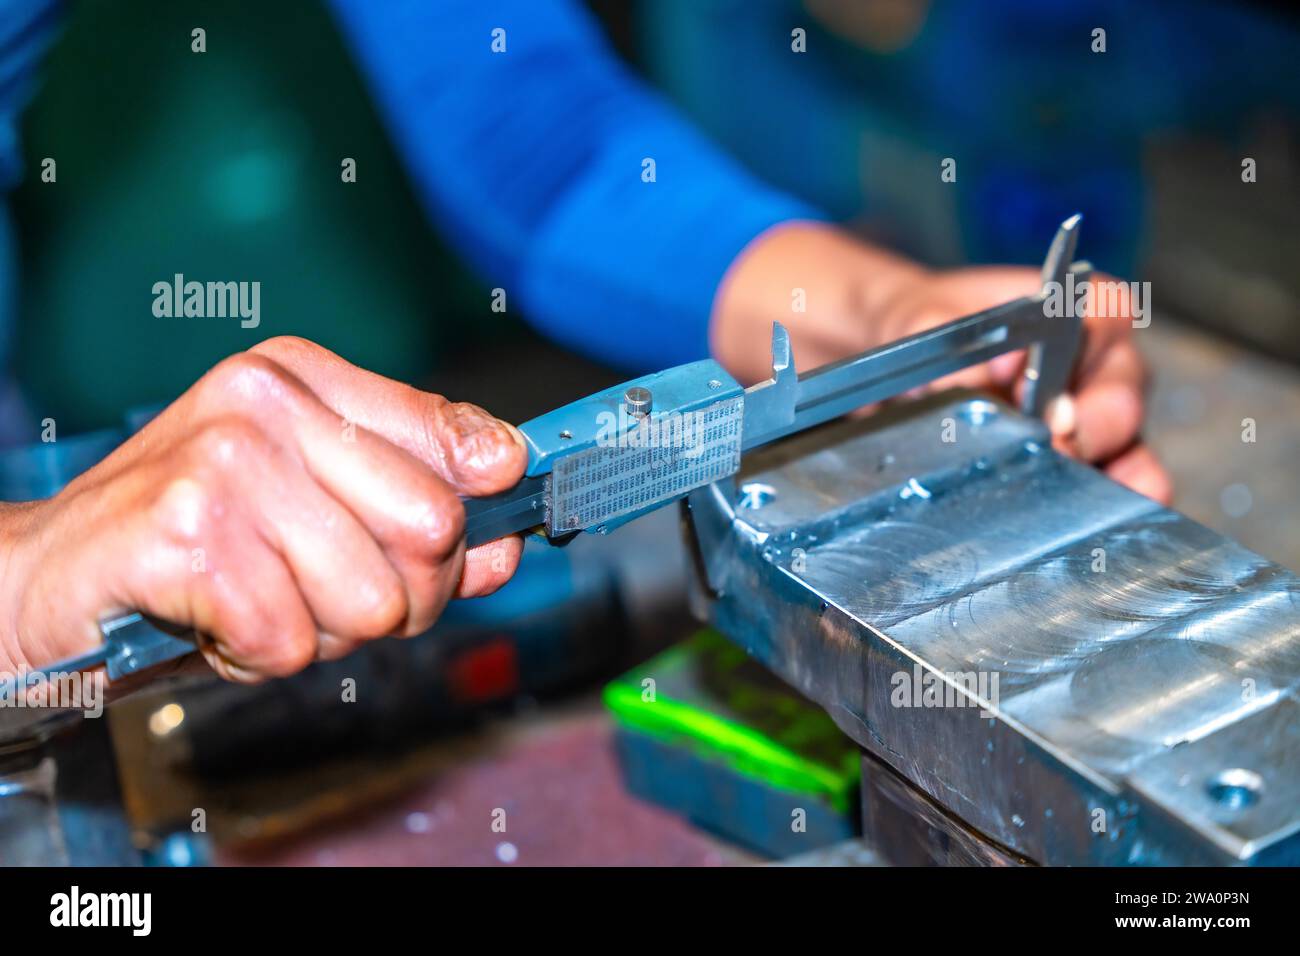 Opérateur avec un doigt coupé travaillant dans une entreprise avec fraises dans un atelier de commande numérique, haute technologie grâce à un centre d'usinage CNC. Banque D'Images